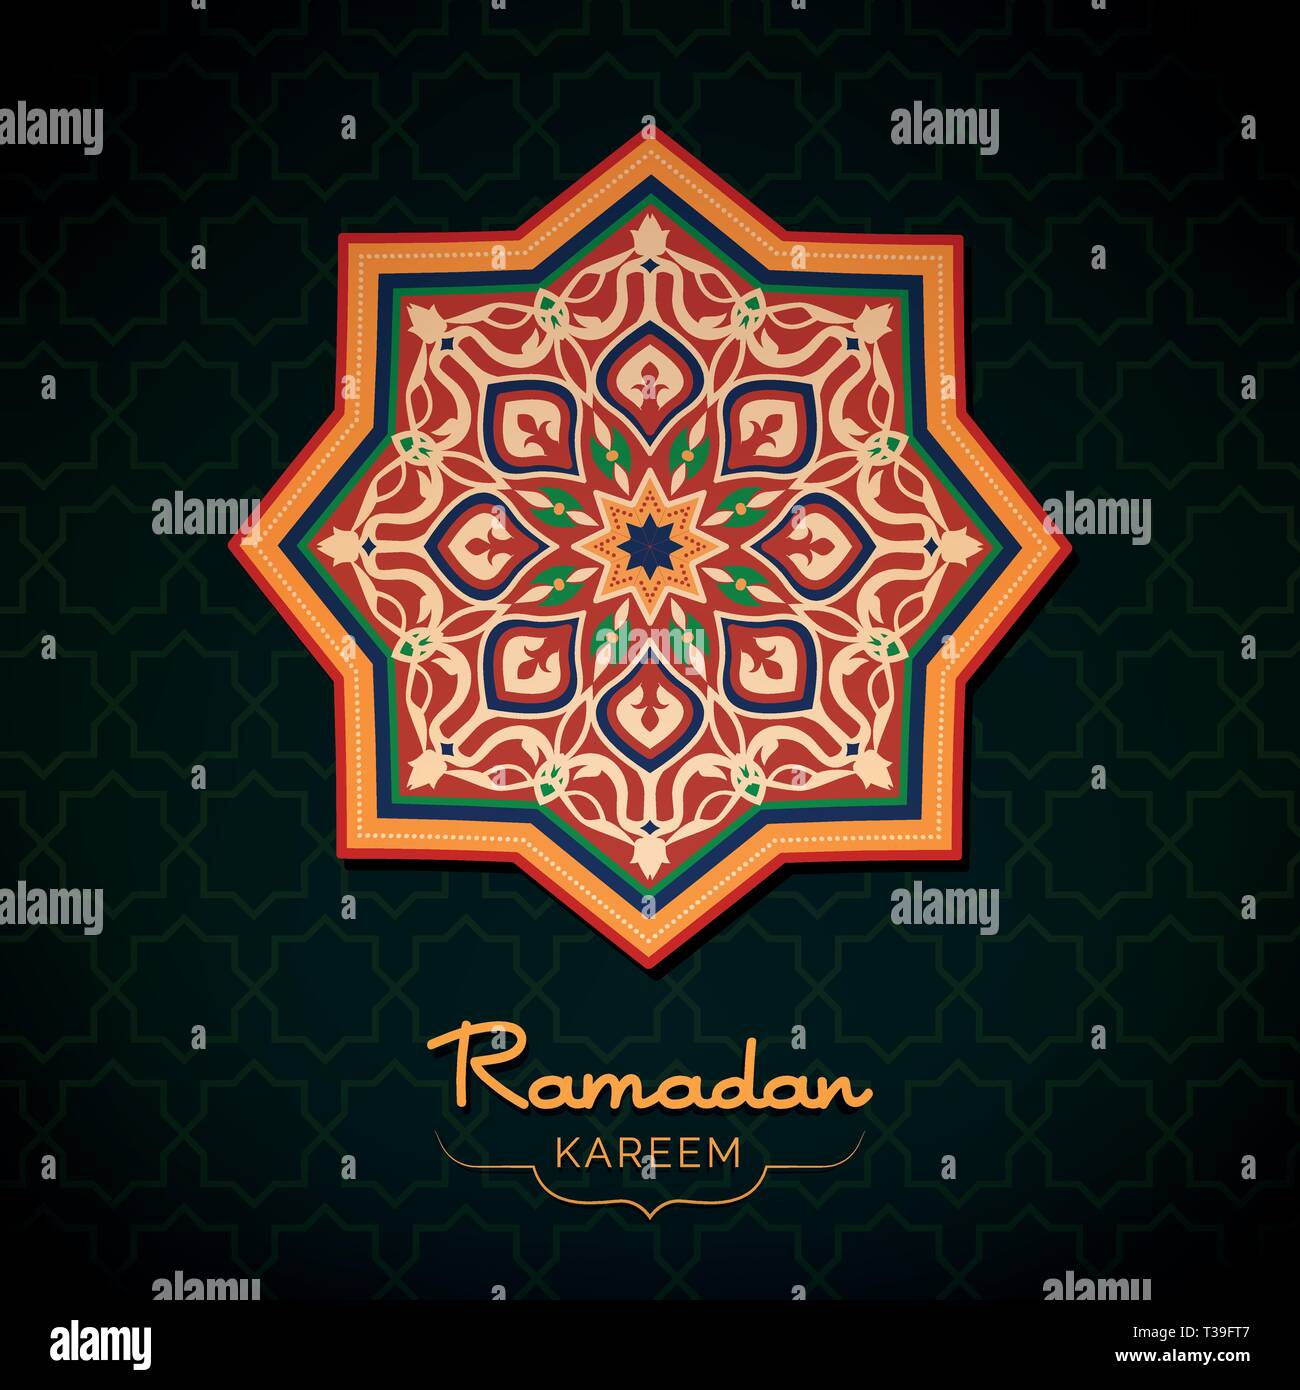 Ramadan Kareem voeux carte avec décoration de style moyen-oriental, la culture et la religion islamique concept Illustration de Vecteur